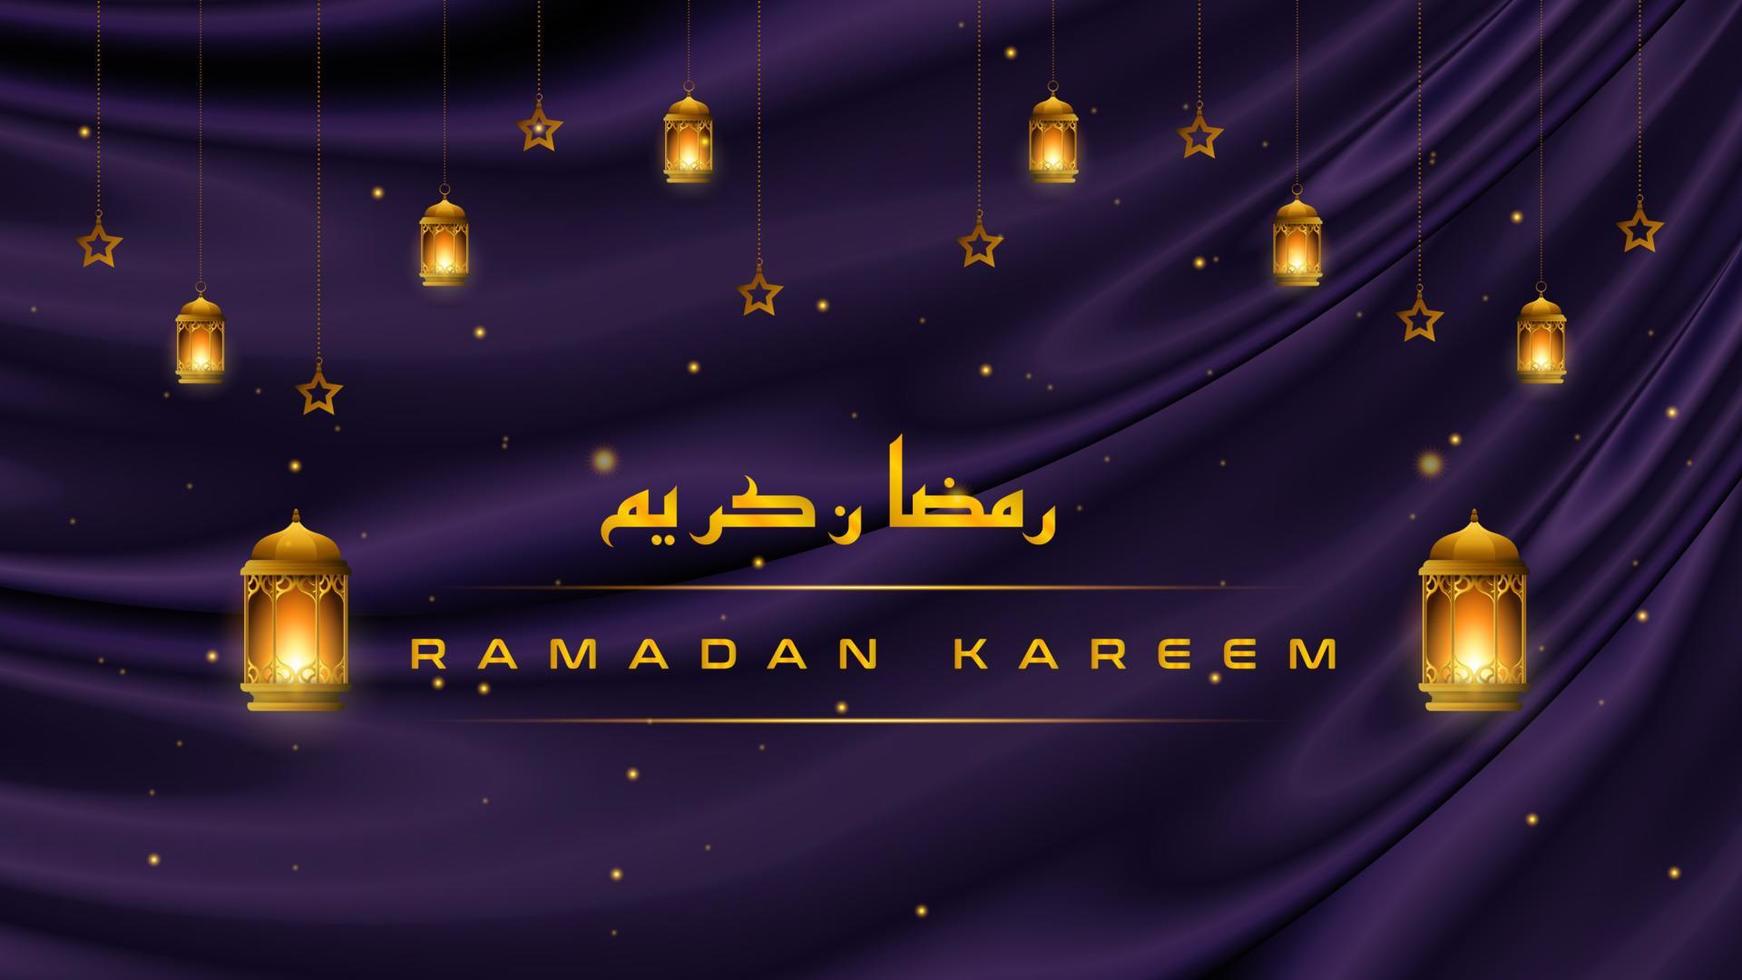 fundo de saudação ramadan kareem islâmico com lanterna de ouro sobre fundo roxo de luxo. modelo de ilustração vetorial ramadan kareem vetor